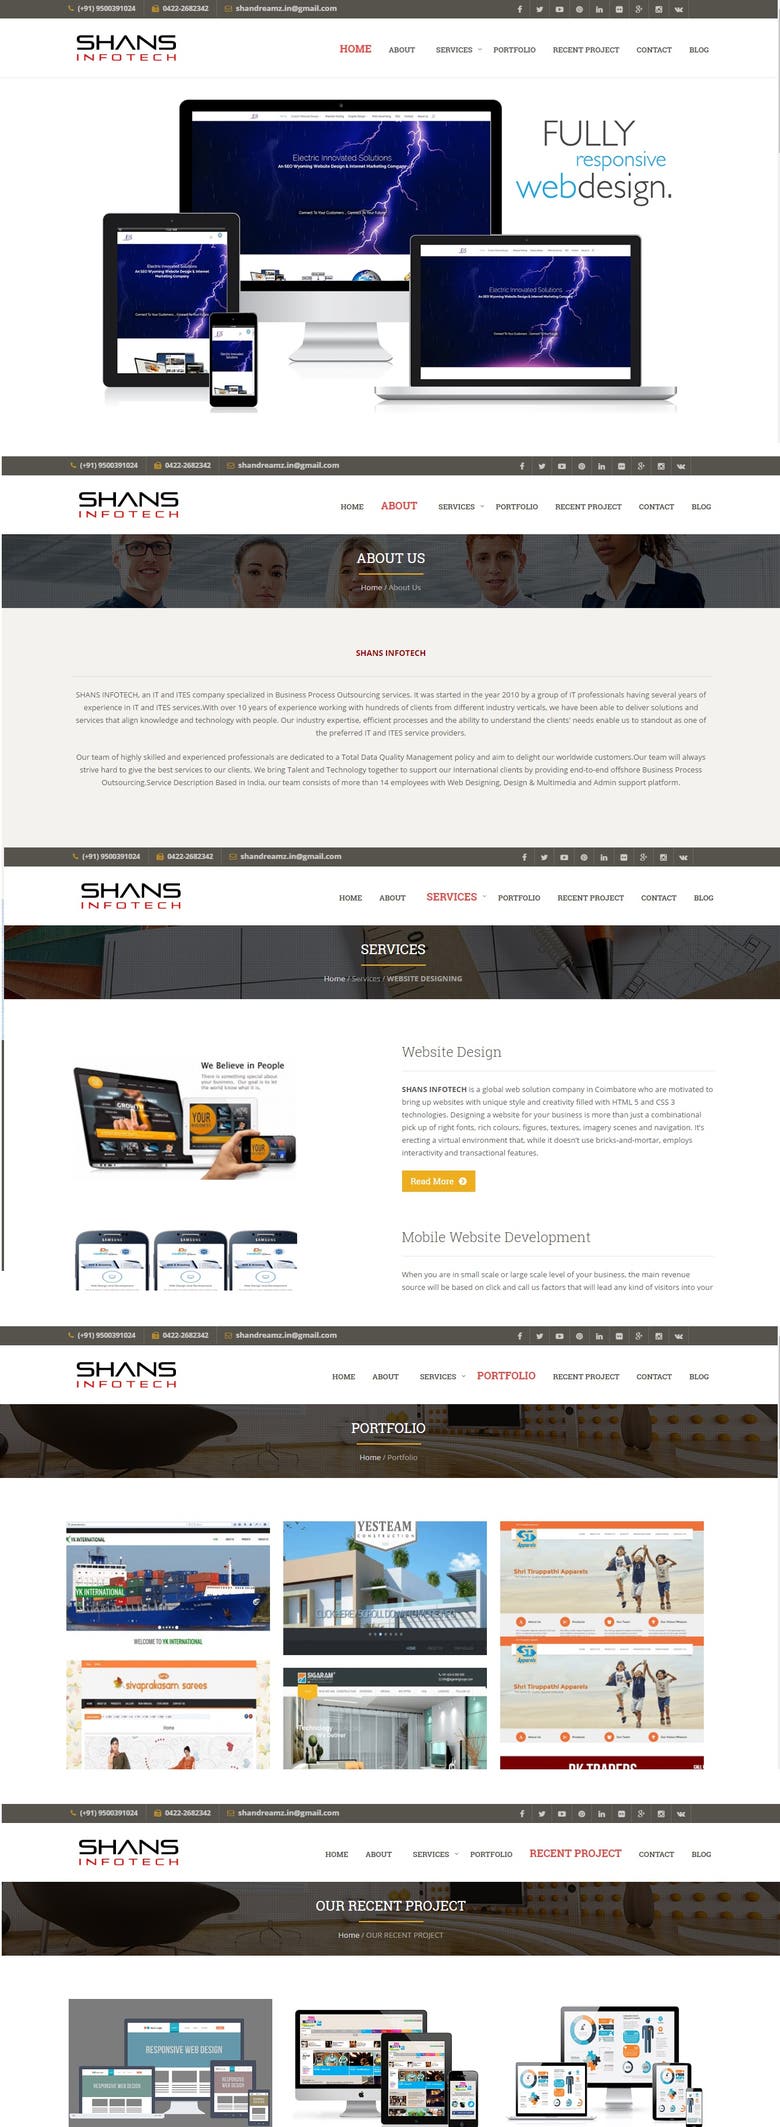 Website Design - www.shansinfotech.com